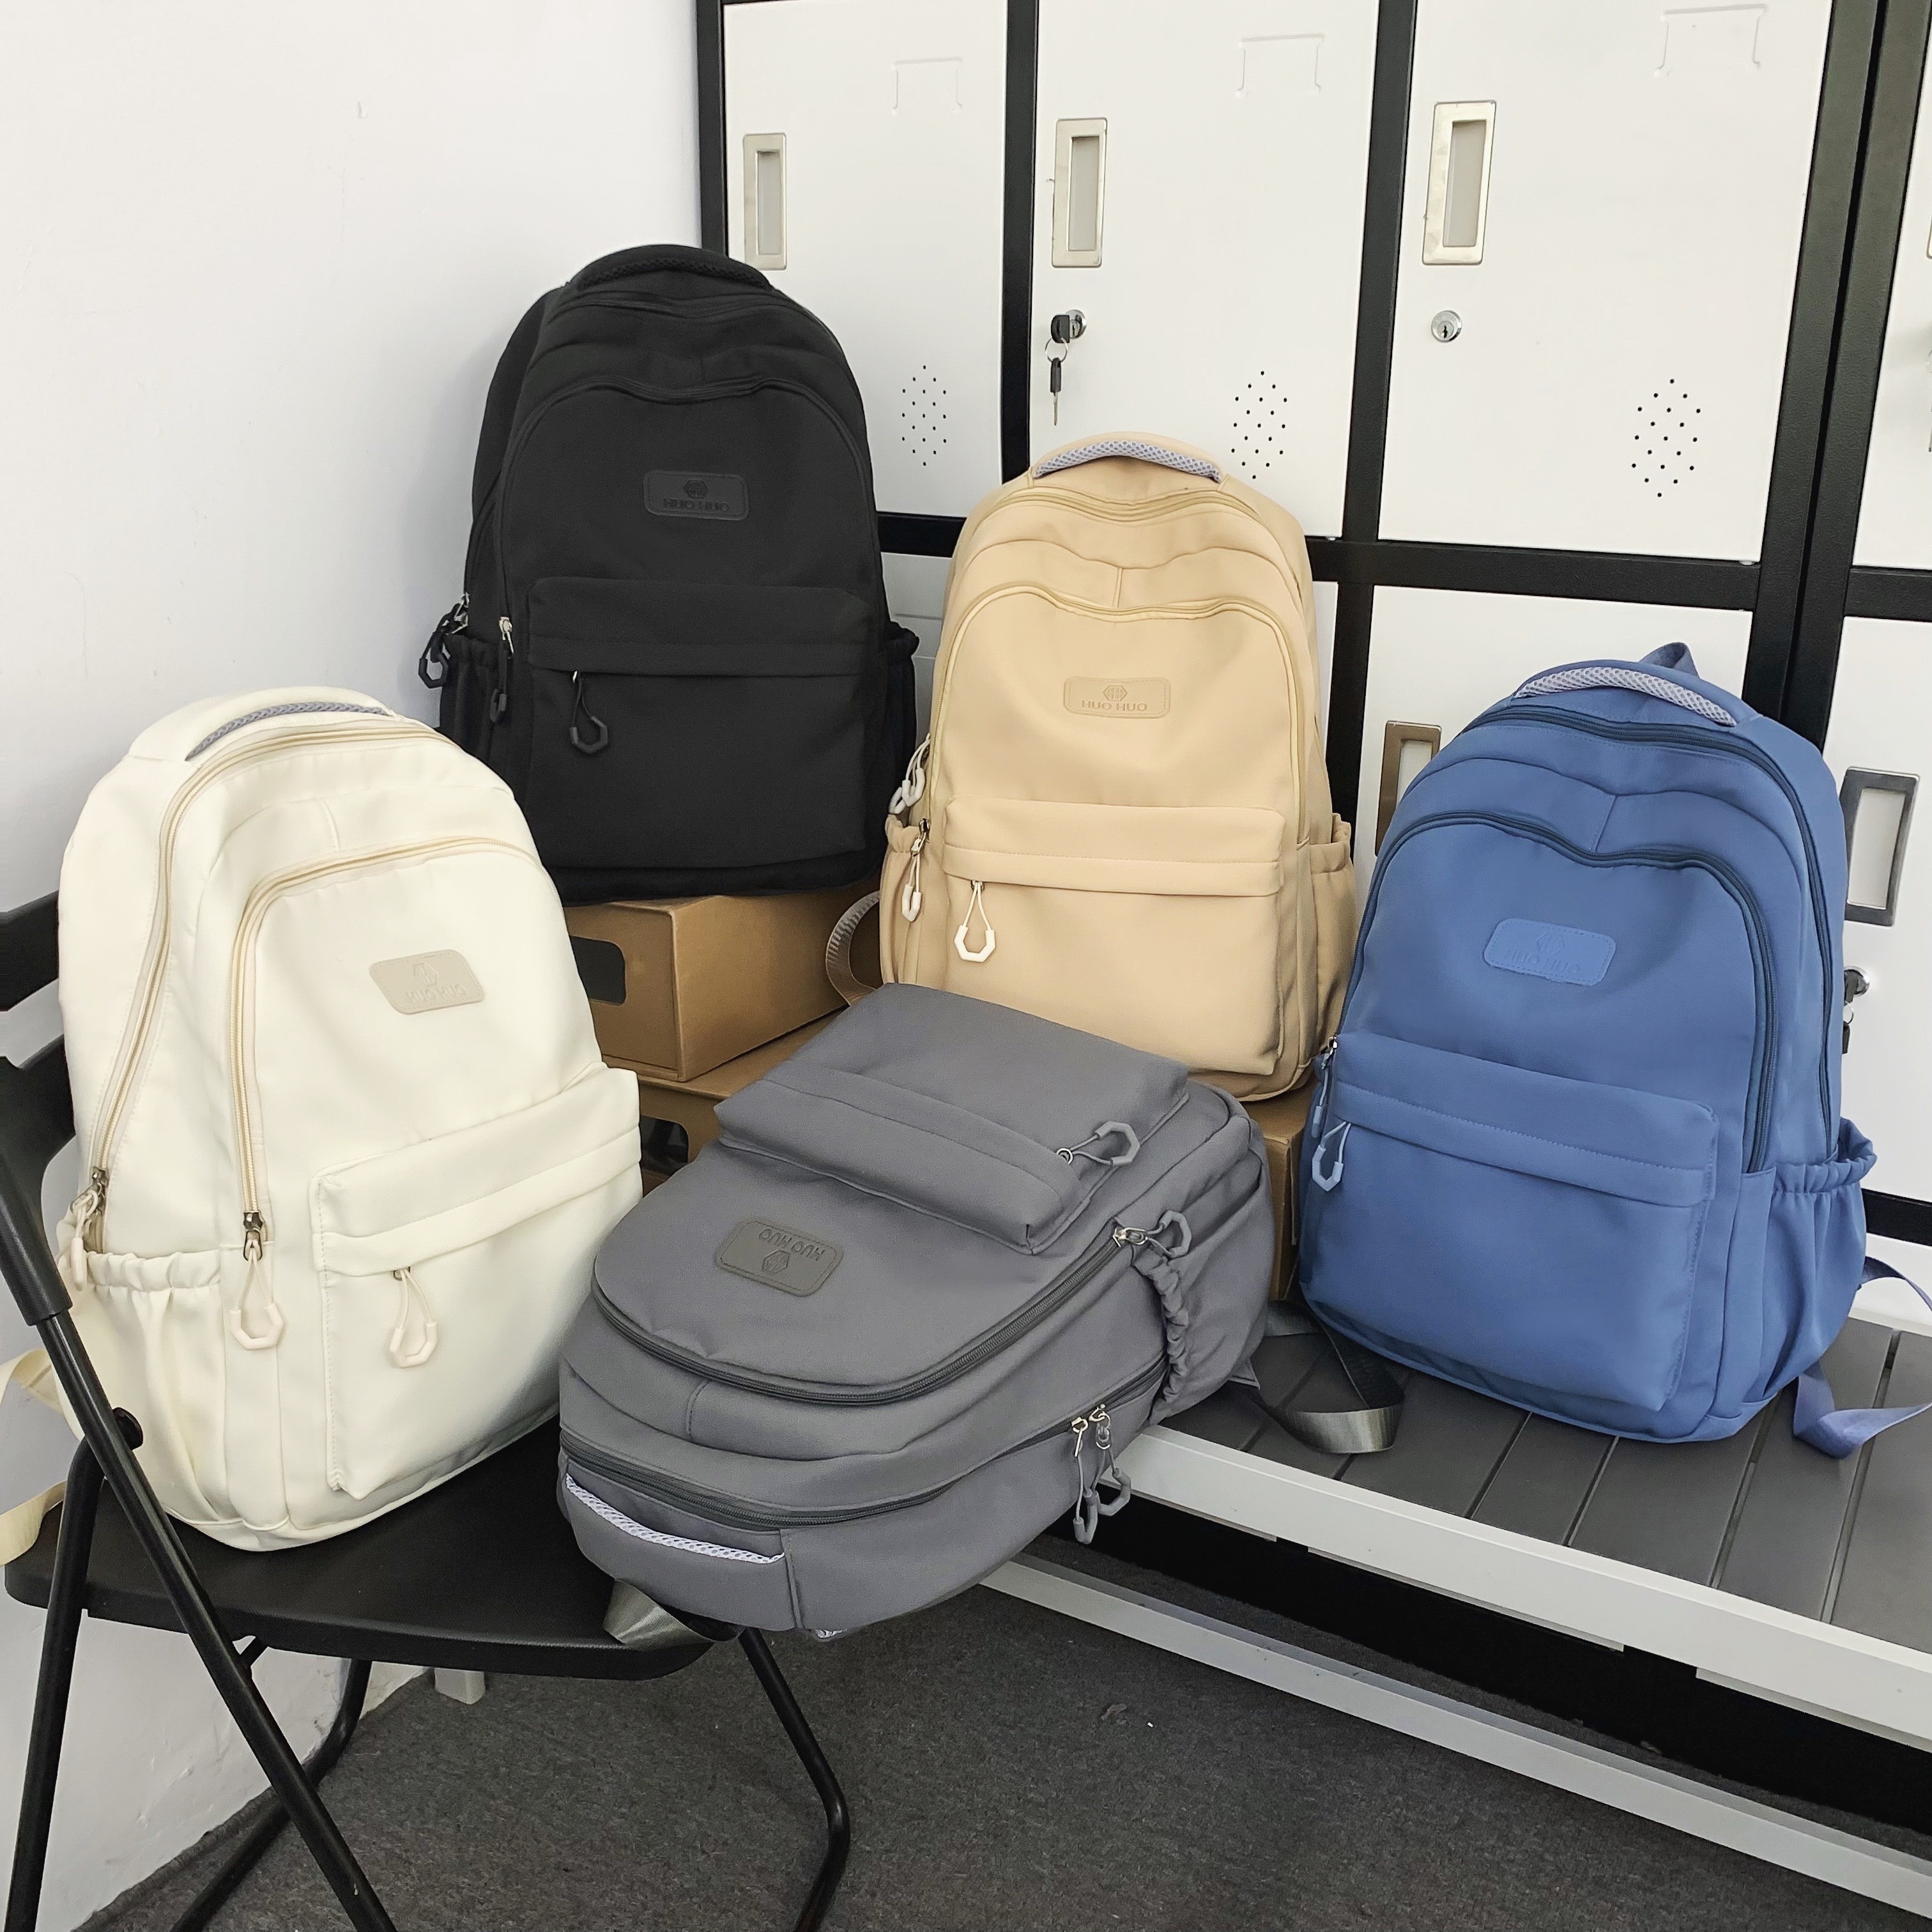 Stuff Jam CLN 8090 Multicolor Printed School Bag-Teenagers  Backpack - Backpack